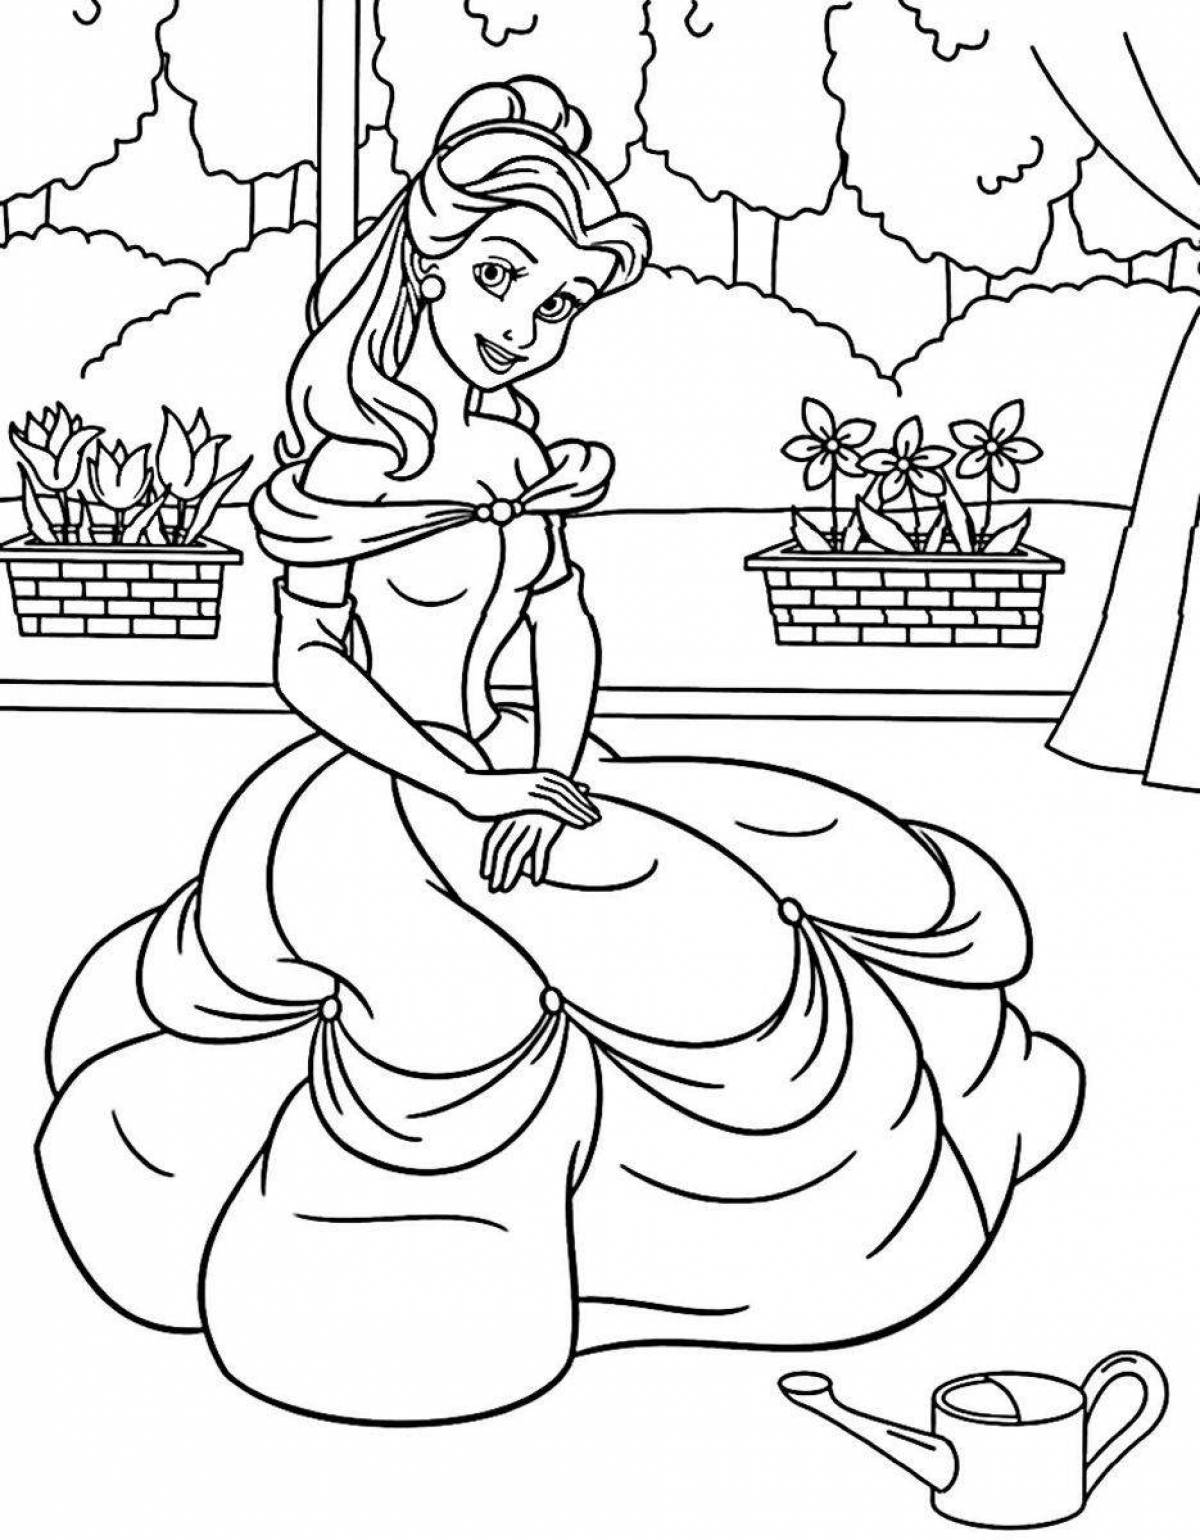 Elegant princess coloring book